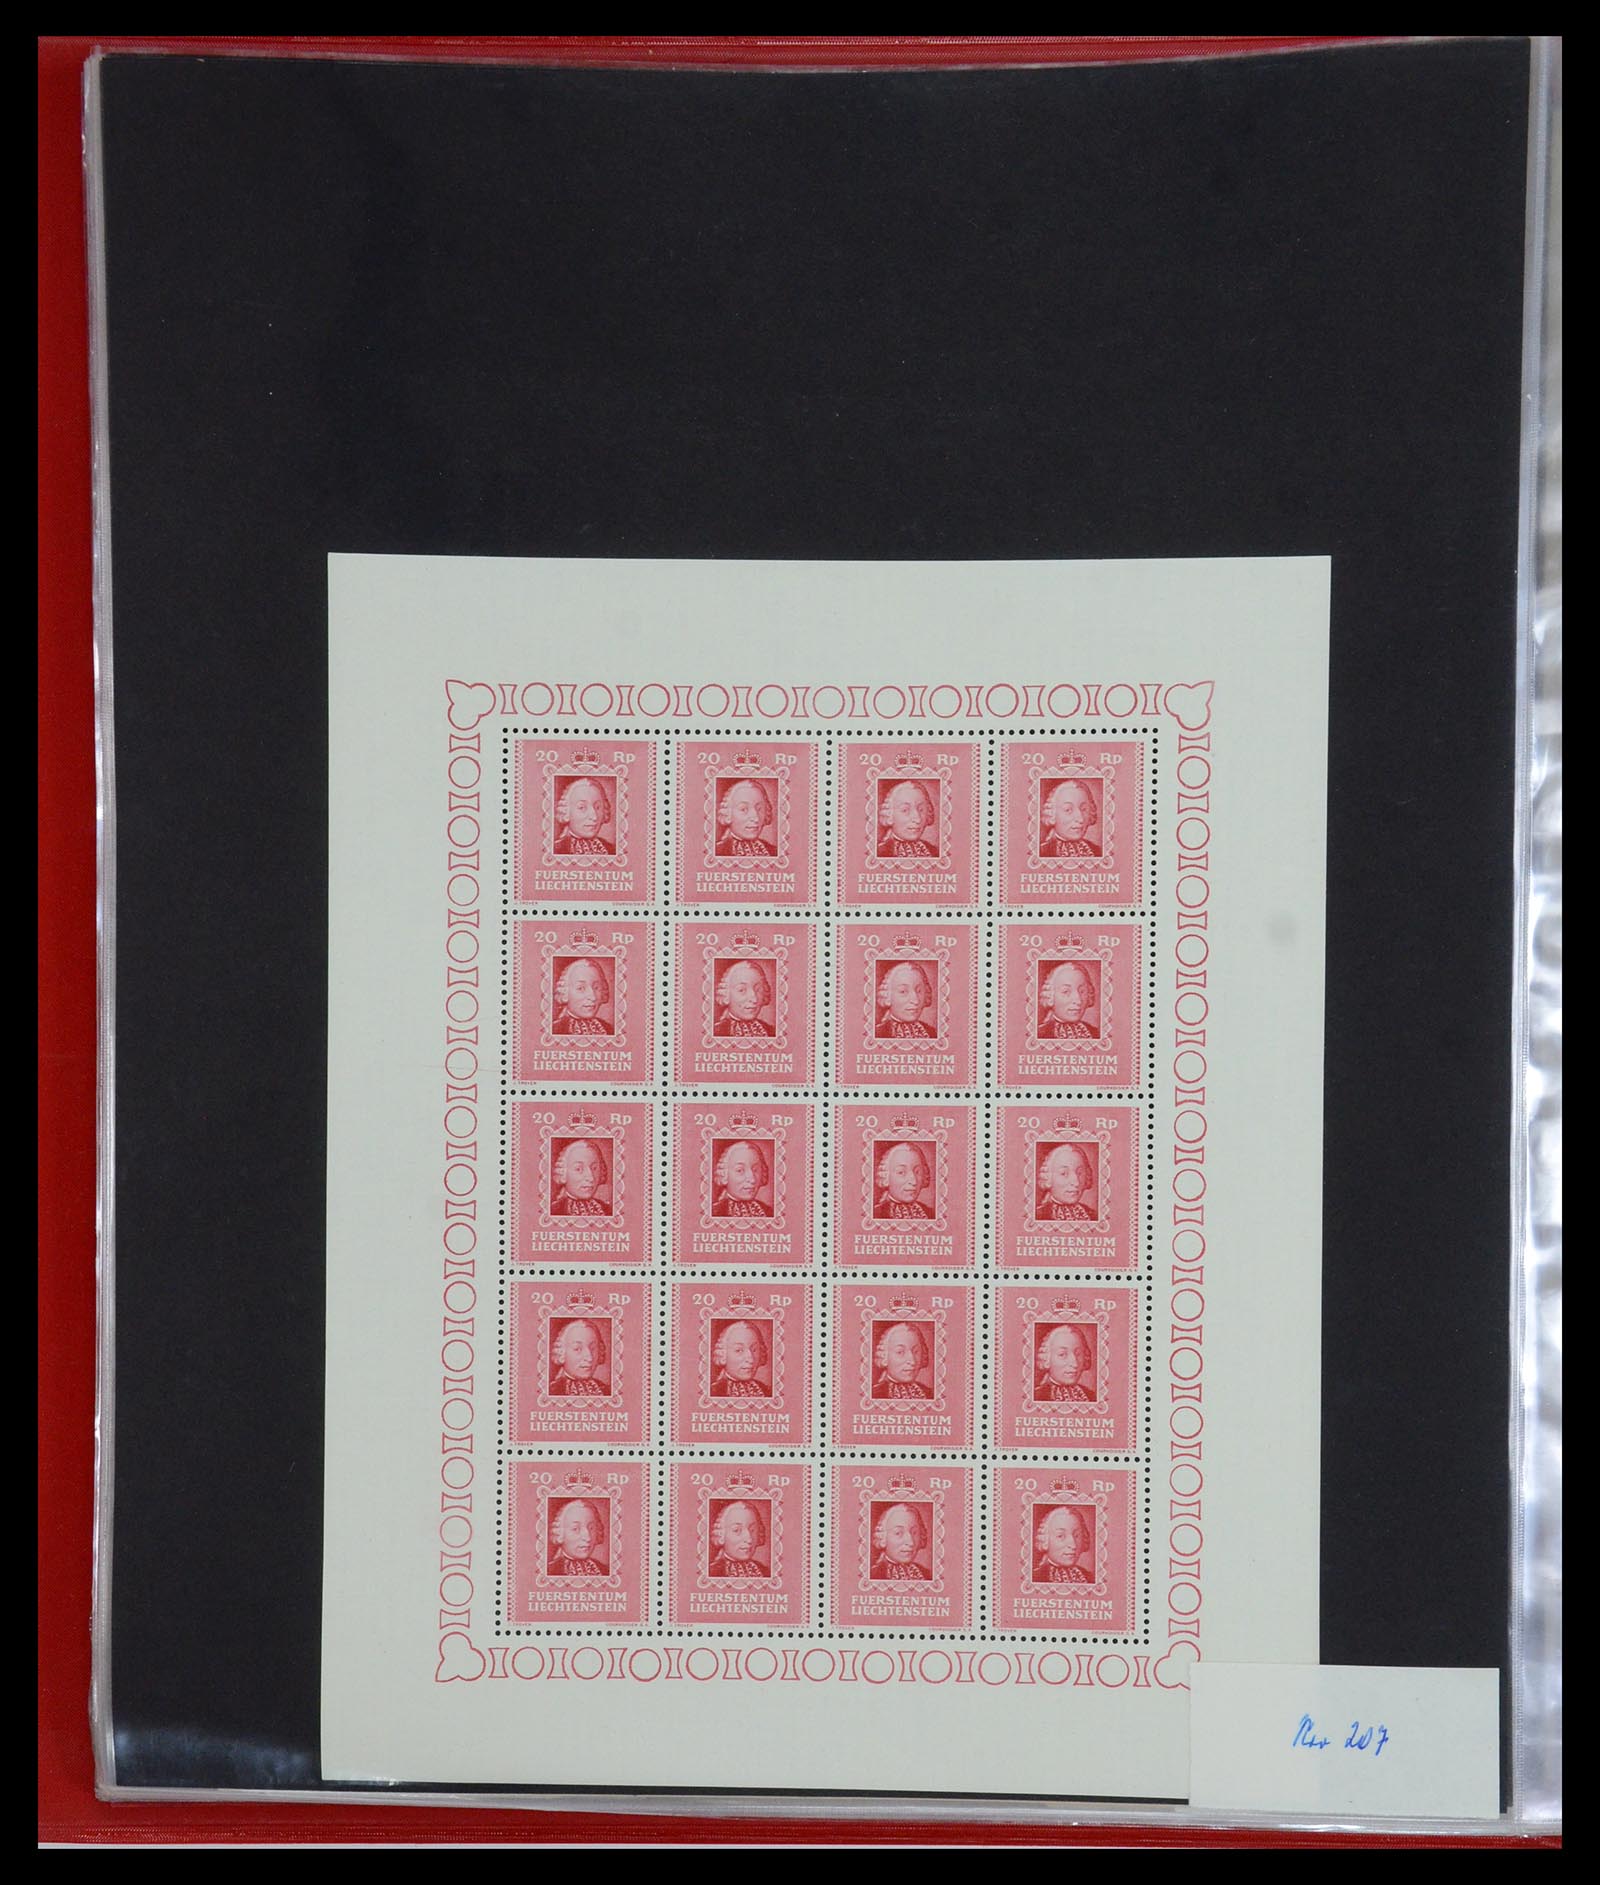 36280 022 - Stamp collection 36280 Liechtenstein souvenir sheets and sheetlets 1934-